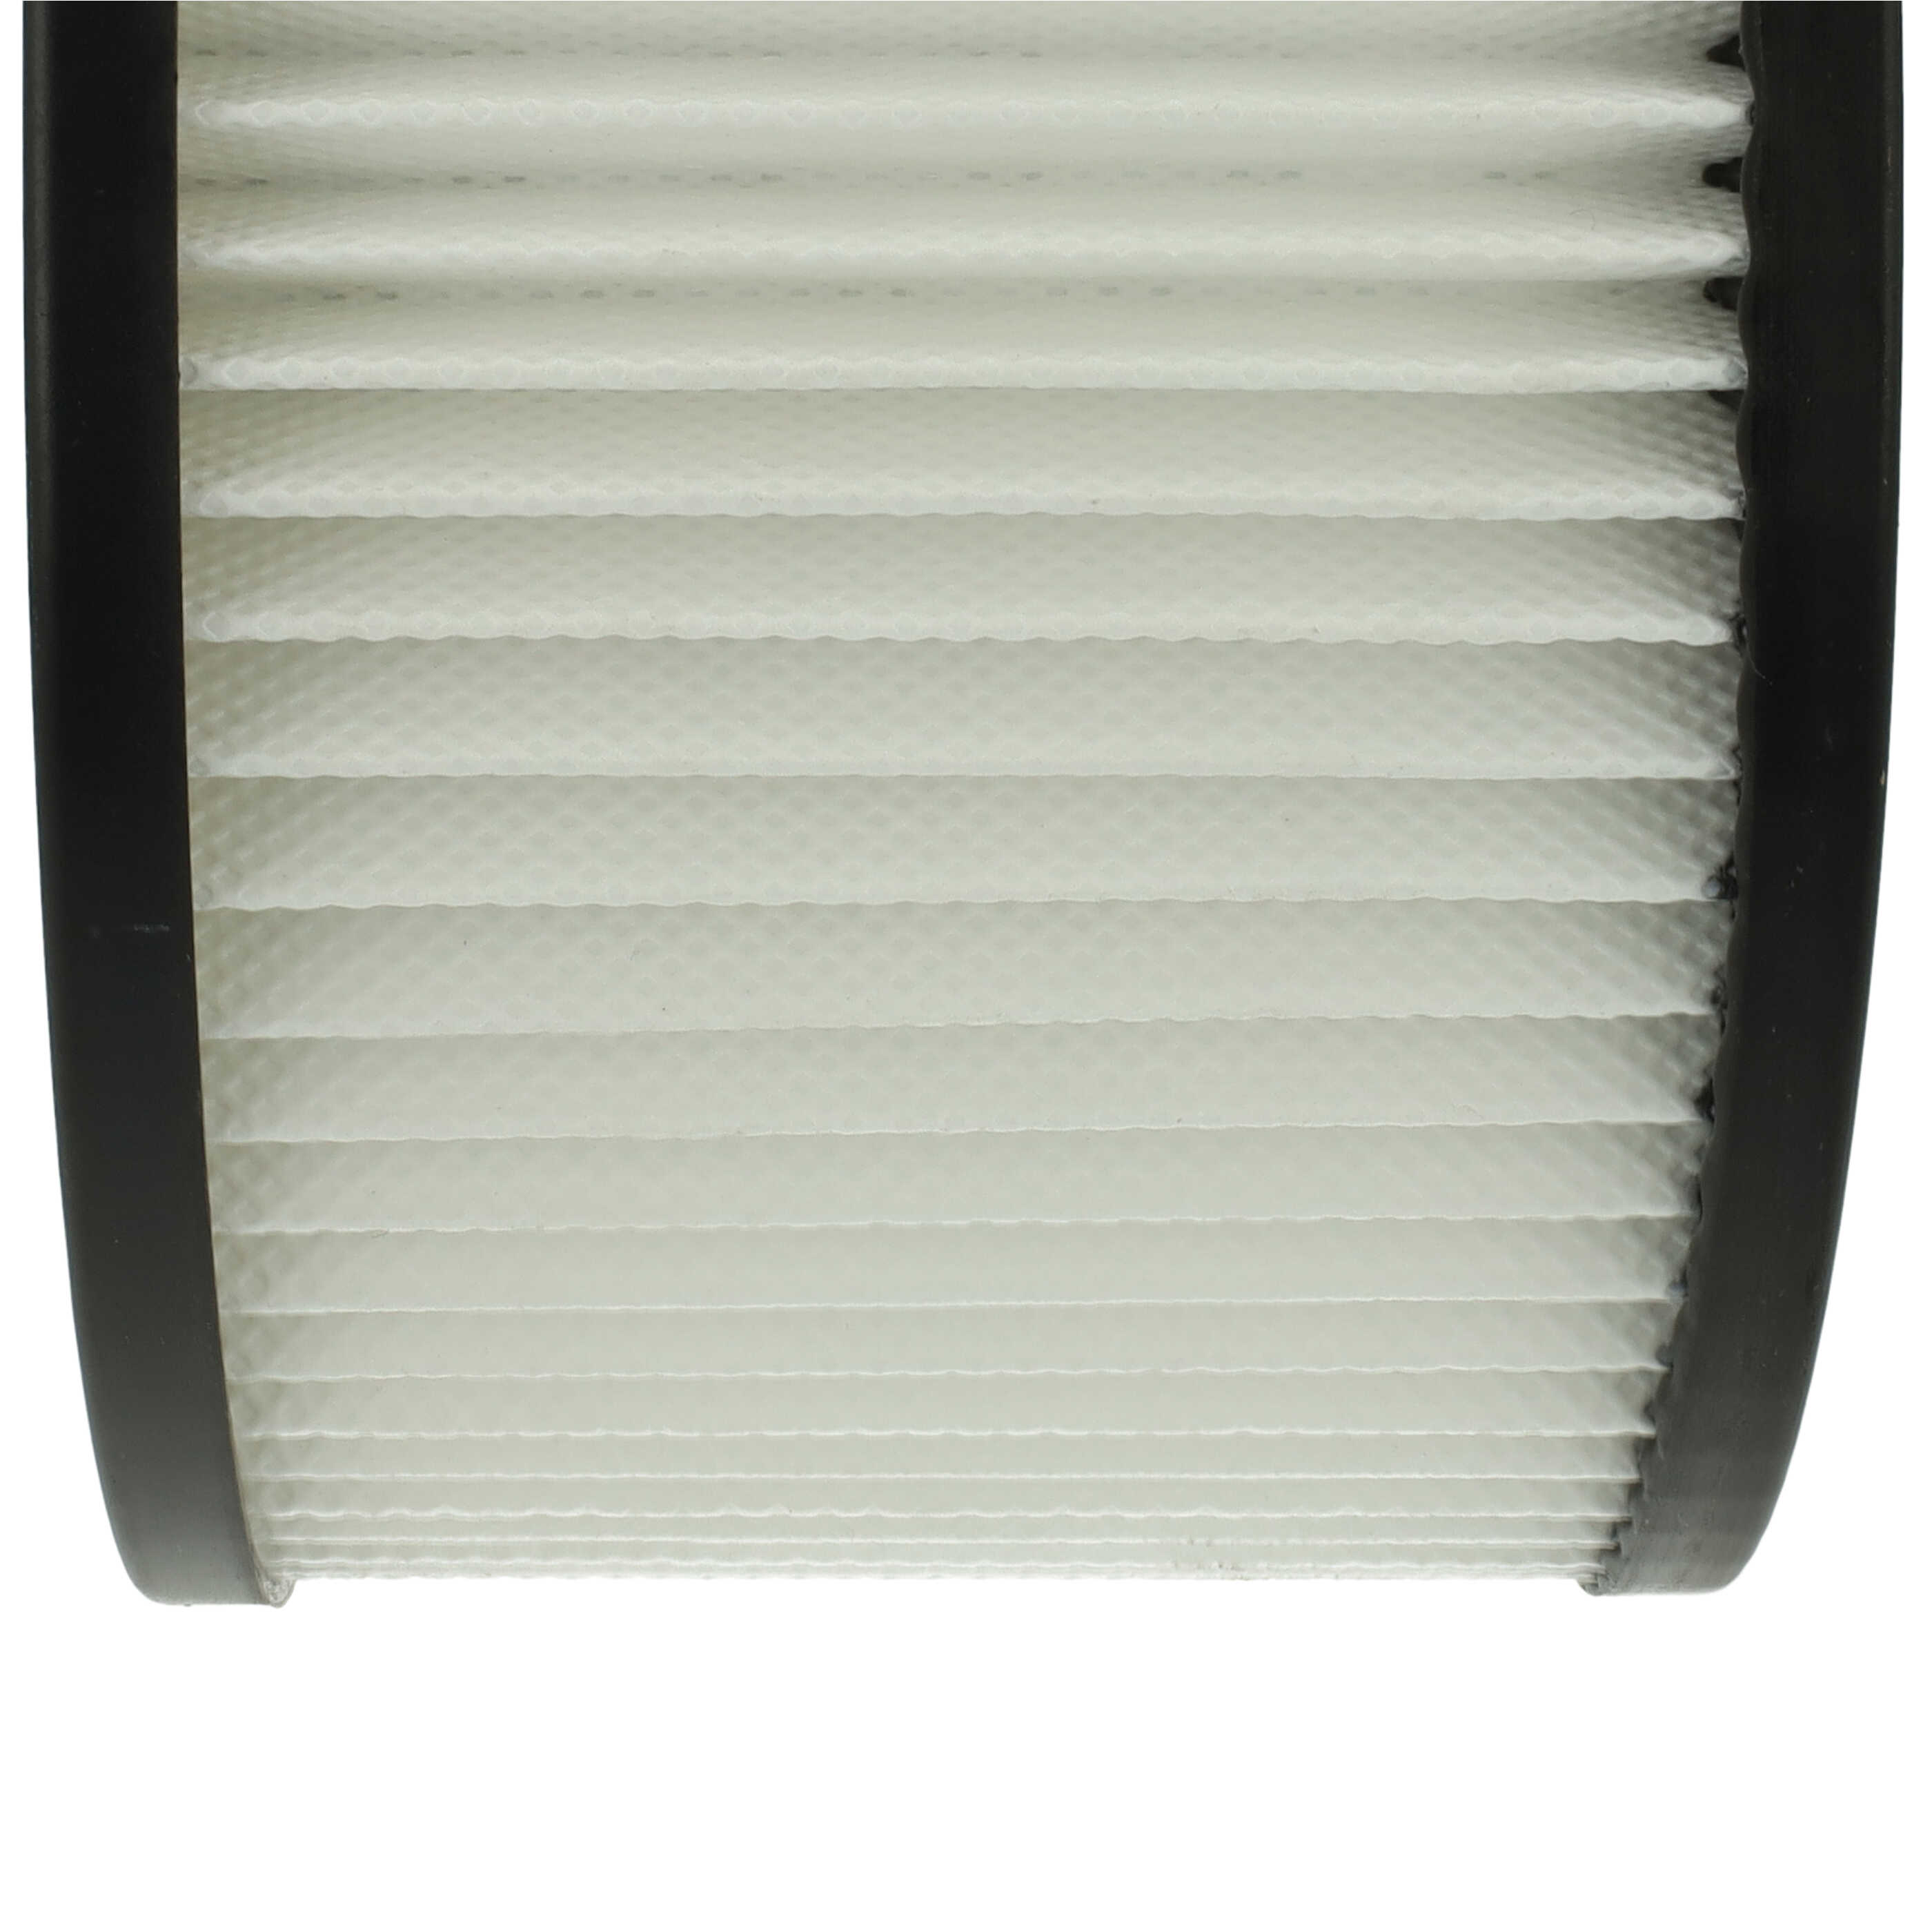 Filtro sostituisce Oxeo 760023 per aspiracenere - filtro HEPA, nero / bianco